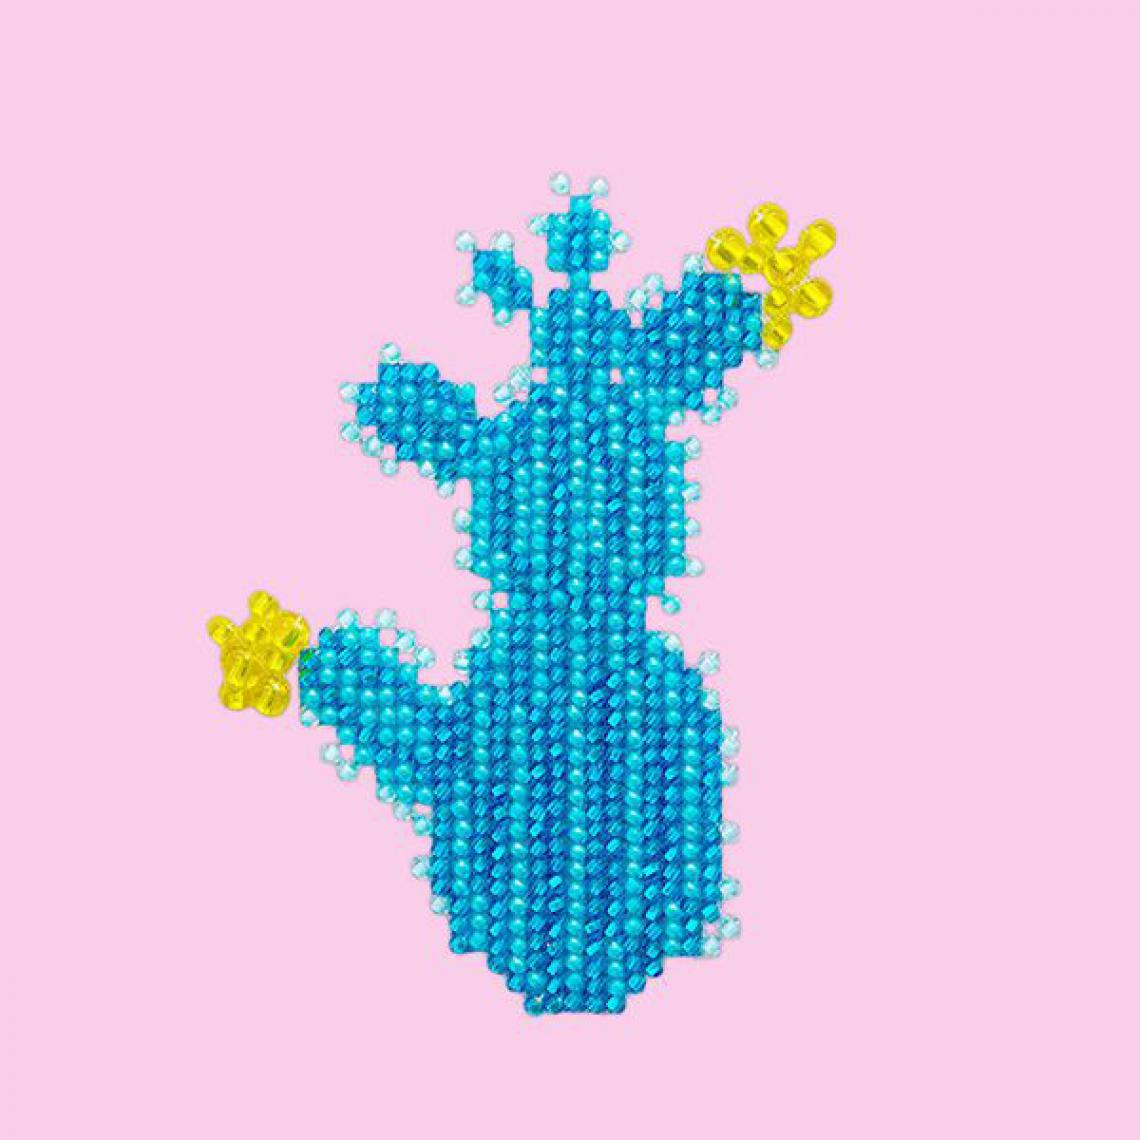 Miniart Crafts - Blue Cactus, Perlenstickset - Miniart Crafts - Accessoires et pièces